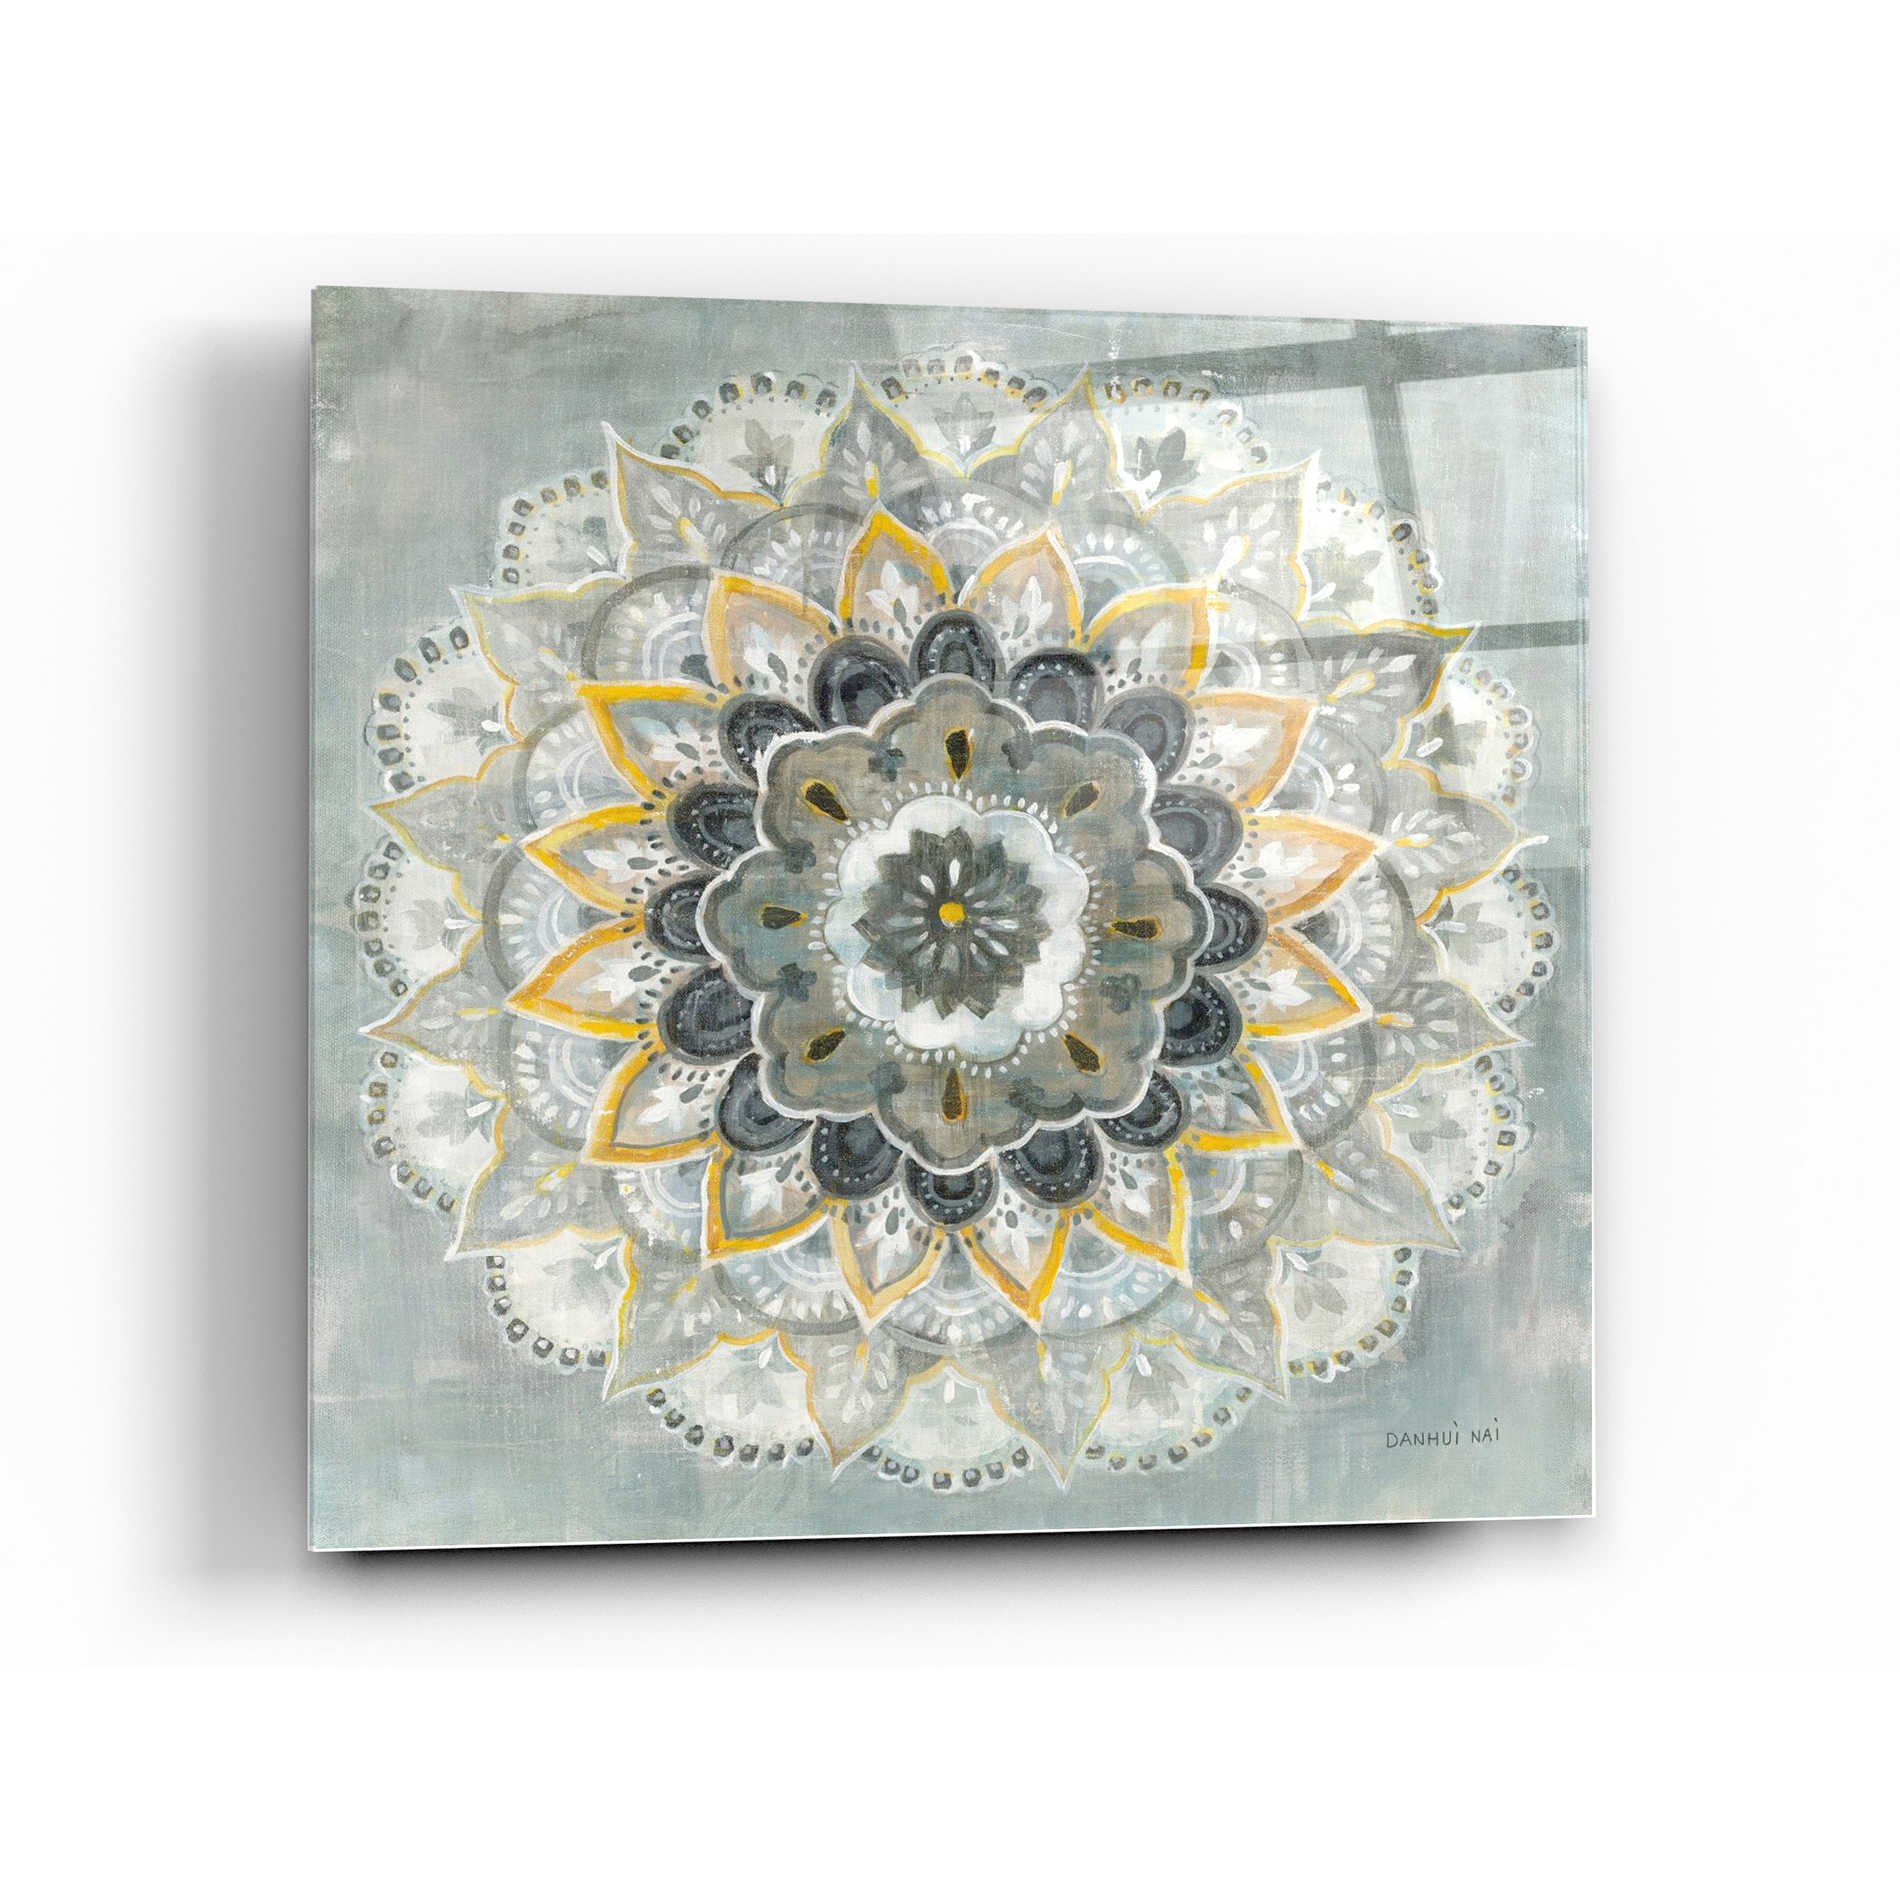 Epic Art 'Sunburst' by Danhui Nai, Acrylic Glass Wall Art,36x36